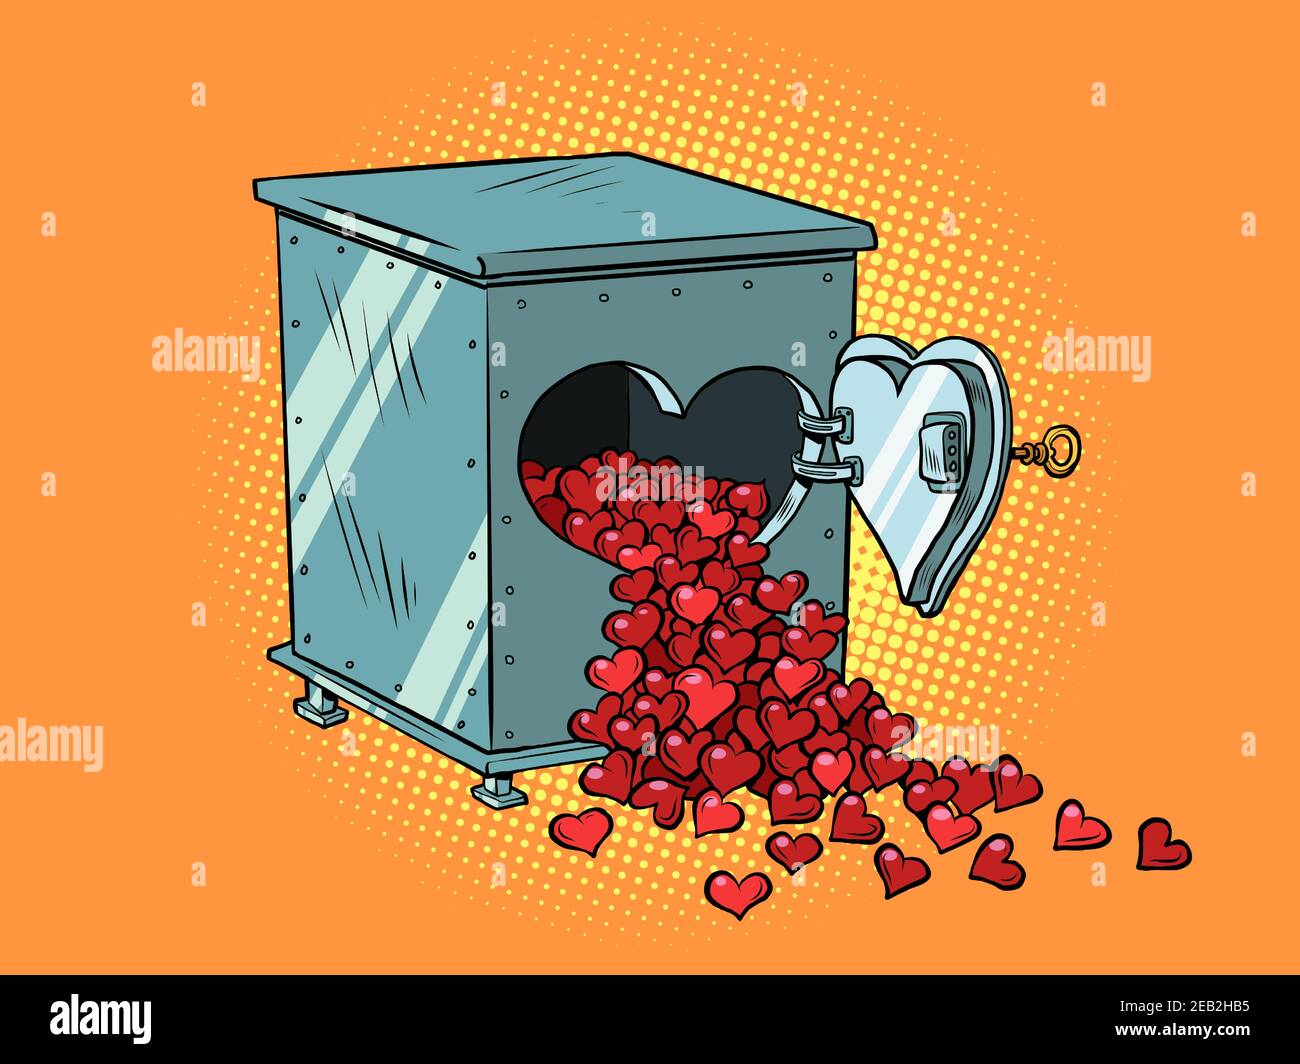 Seguro con corazones rojos de San Valentín enamorados Ilustración del Vector